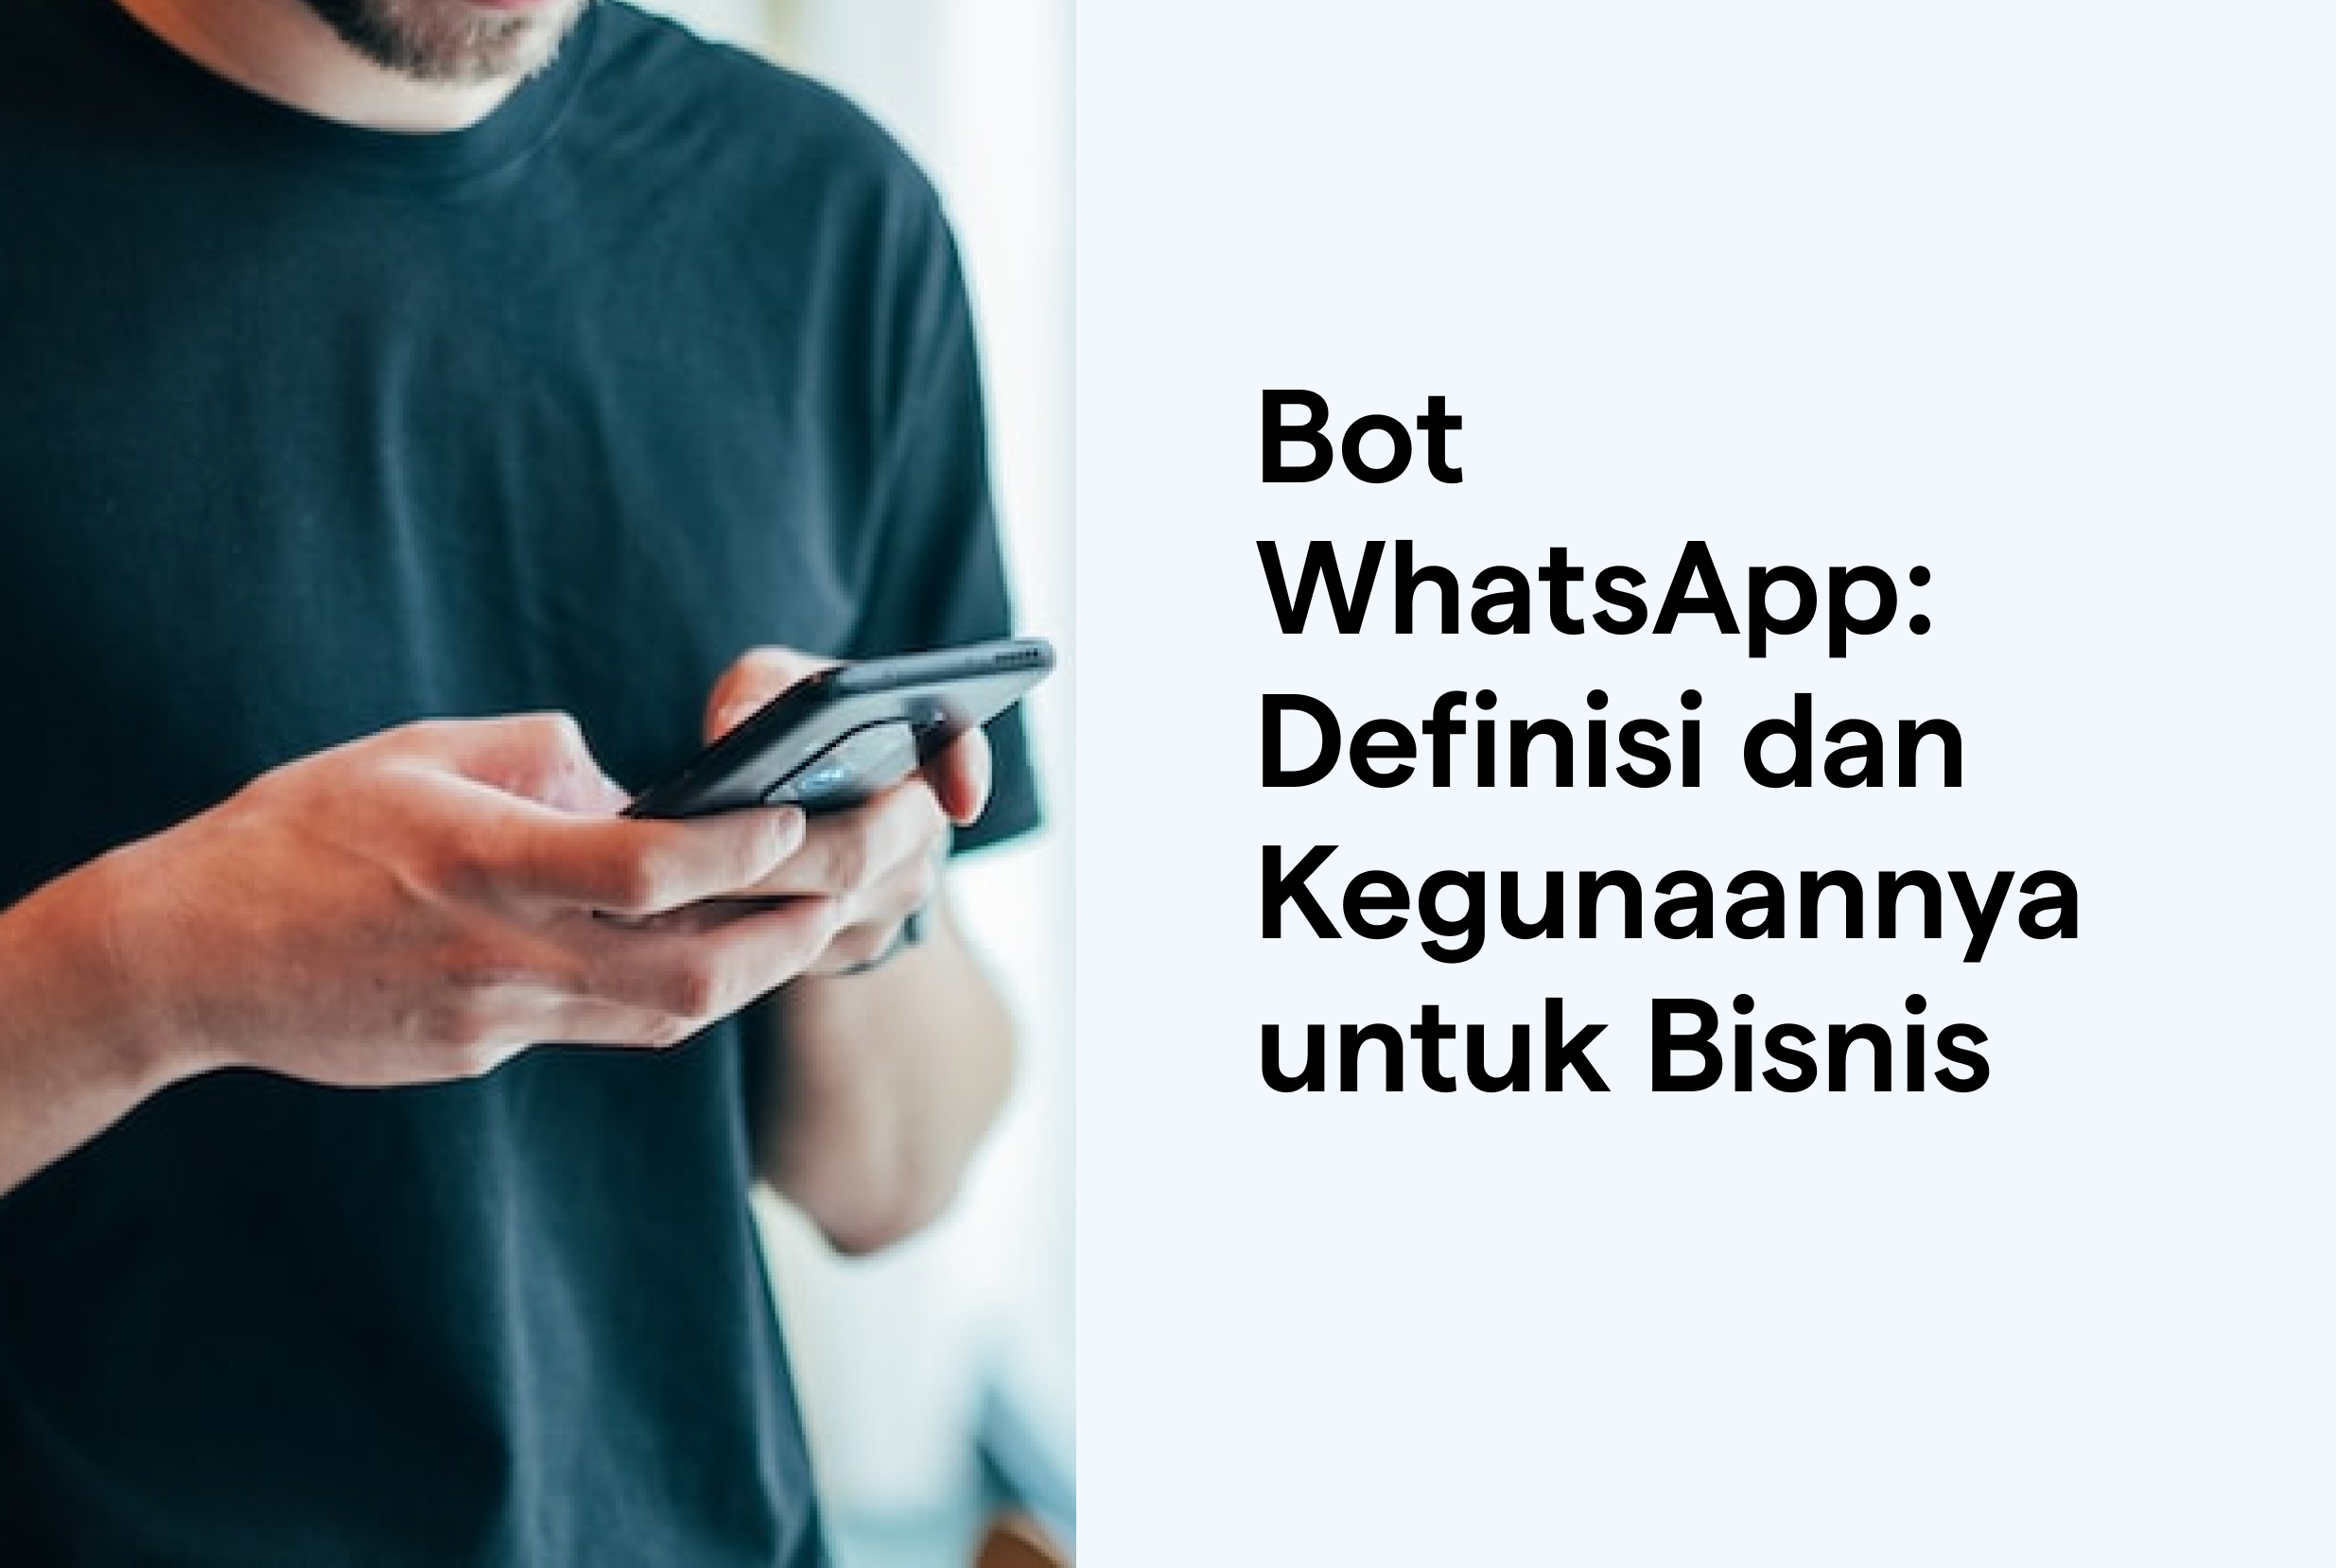 Bot WhatsApp: Definisi dan Kegunaannya untuk Bisnis